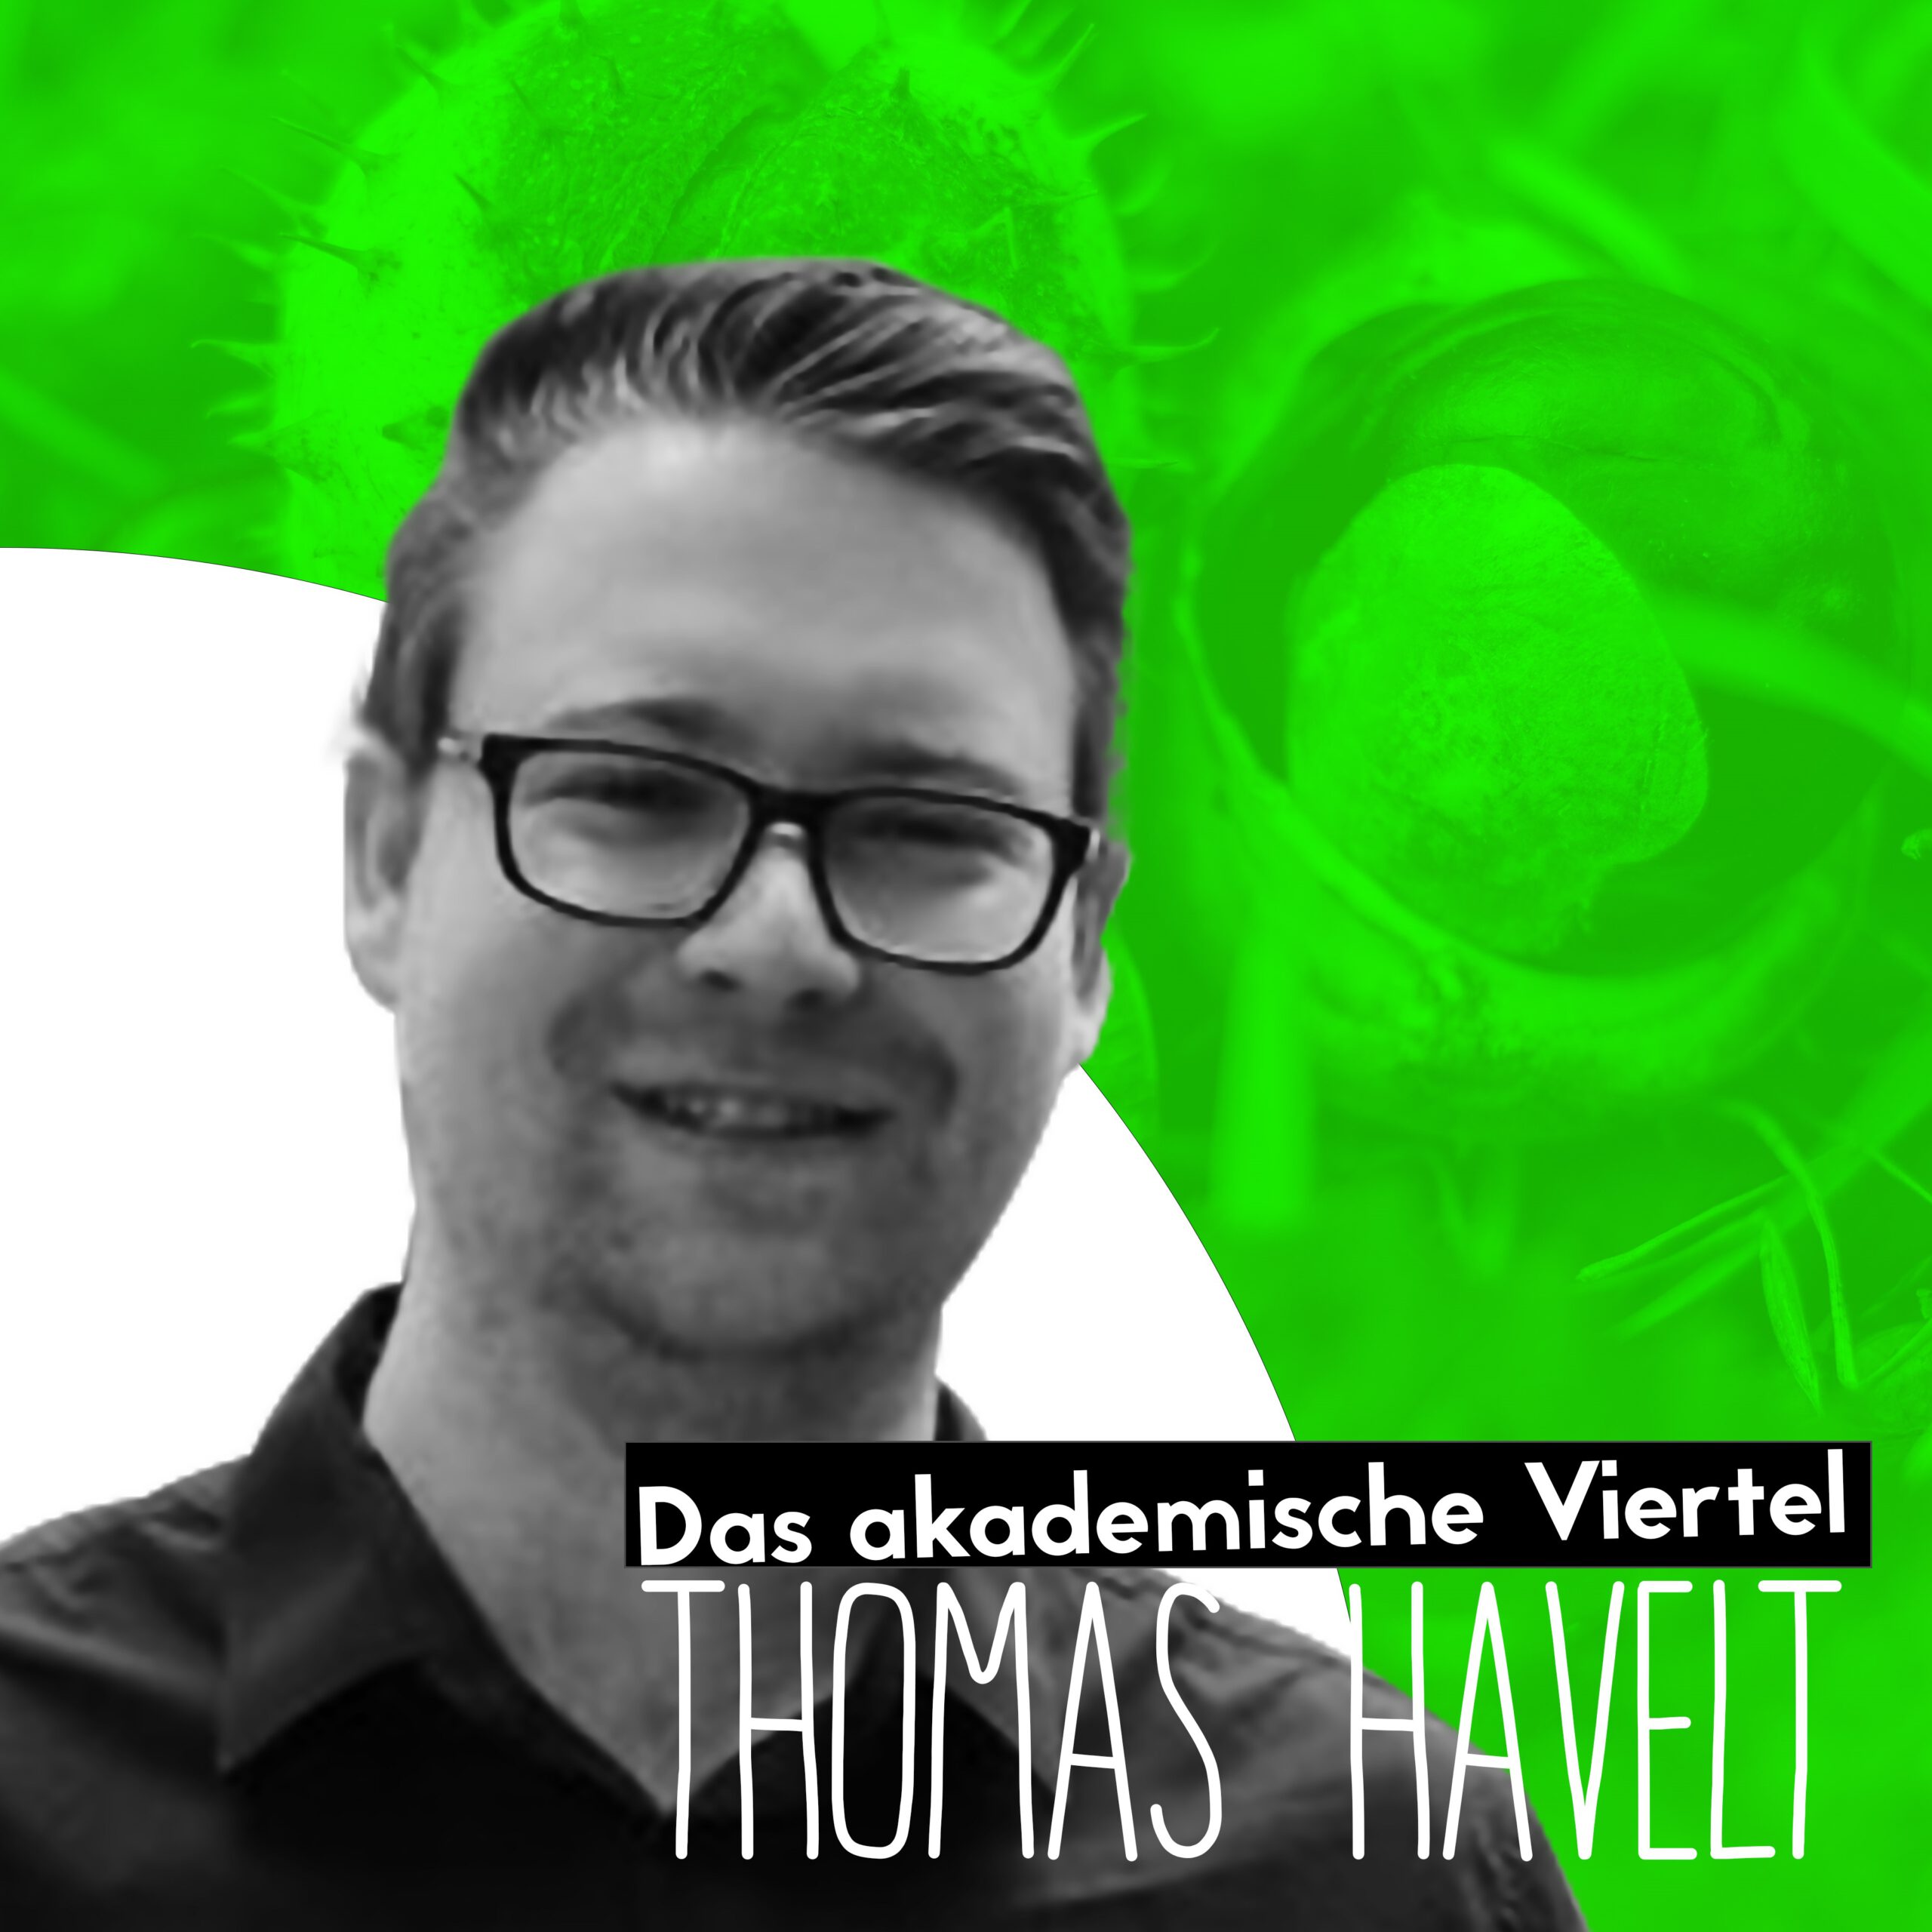 Das Cover der ersten Folge "Das akademische Viertel" - mit Thomas Havelt